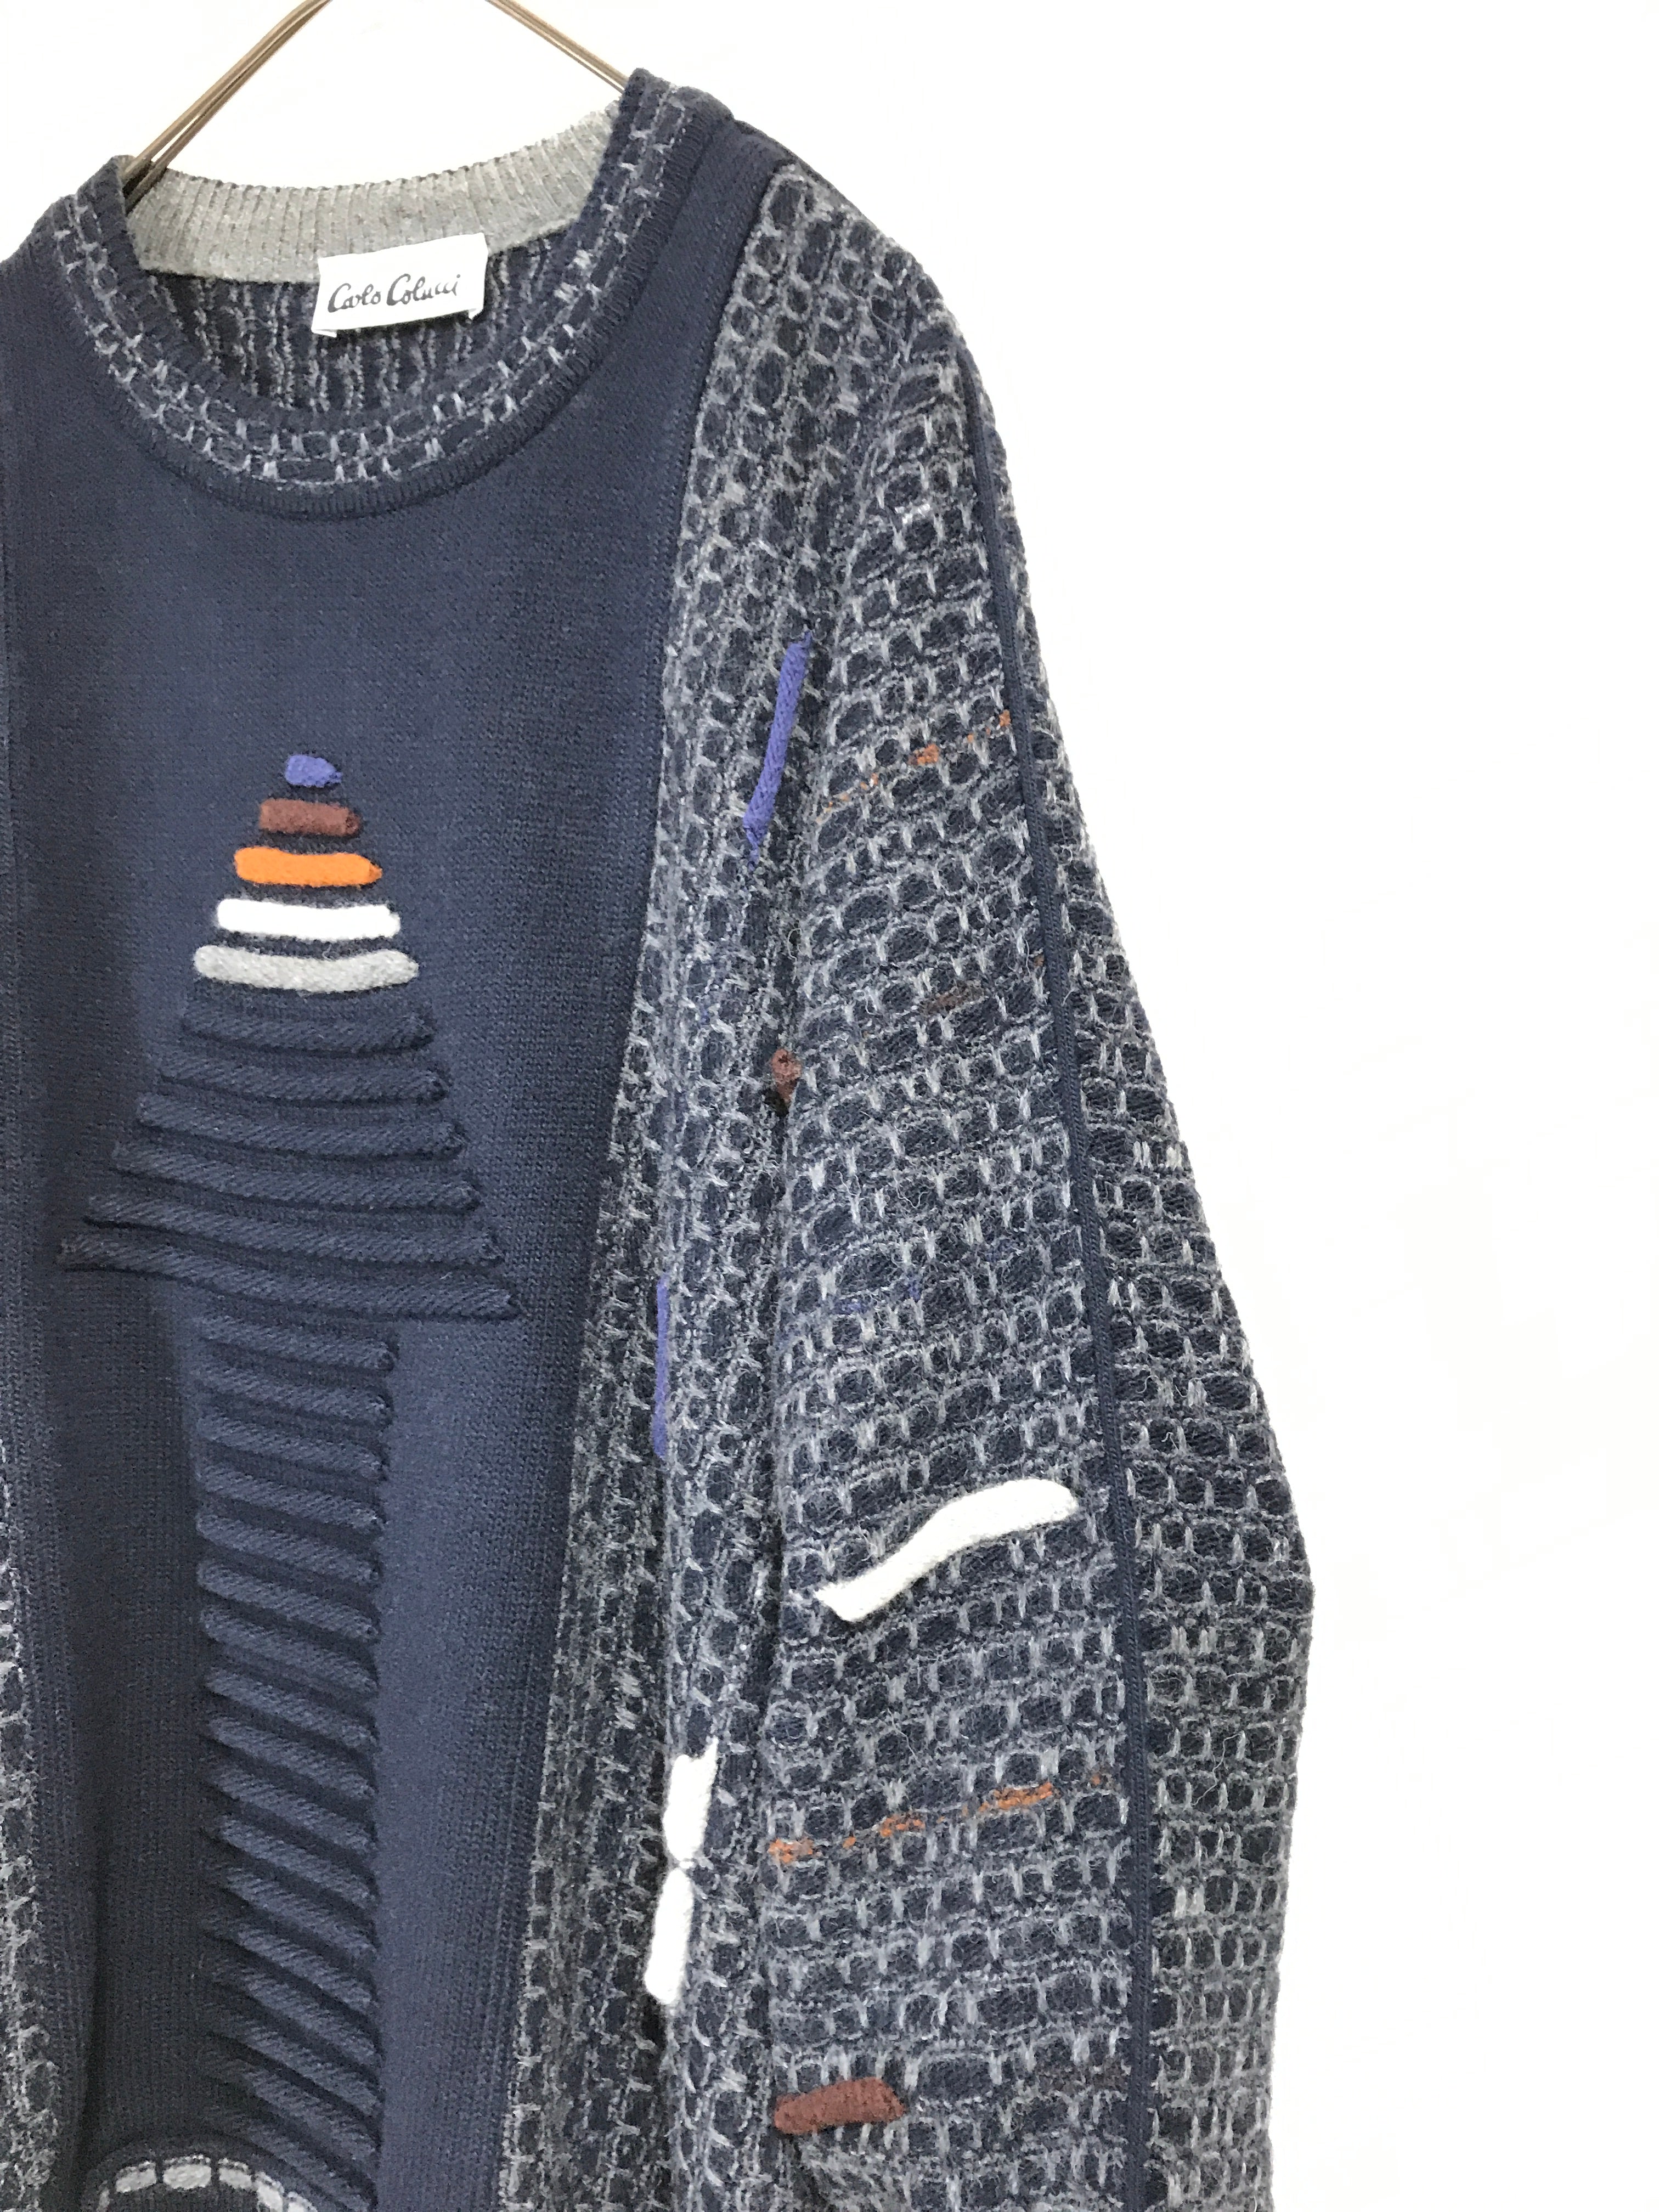 "Carlo Colucci" wool knit sweater